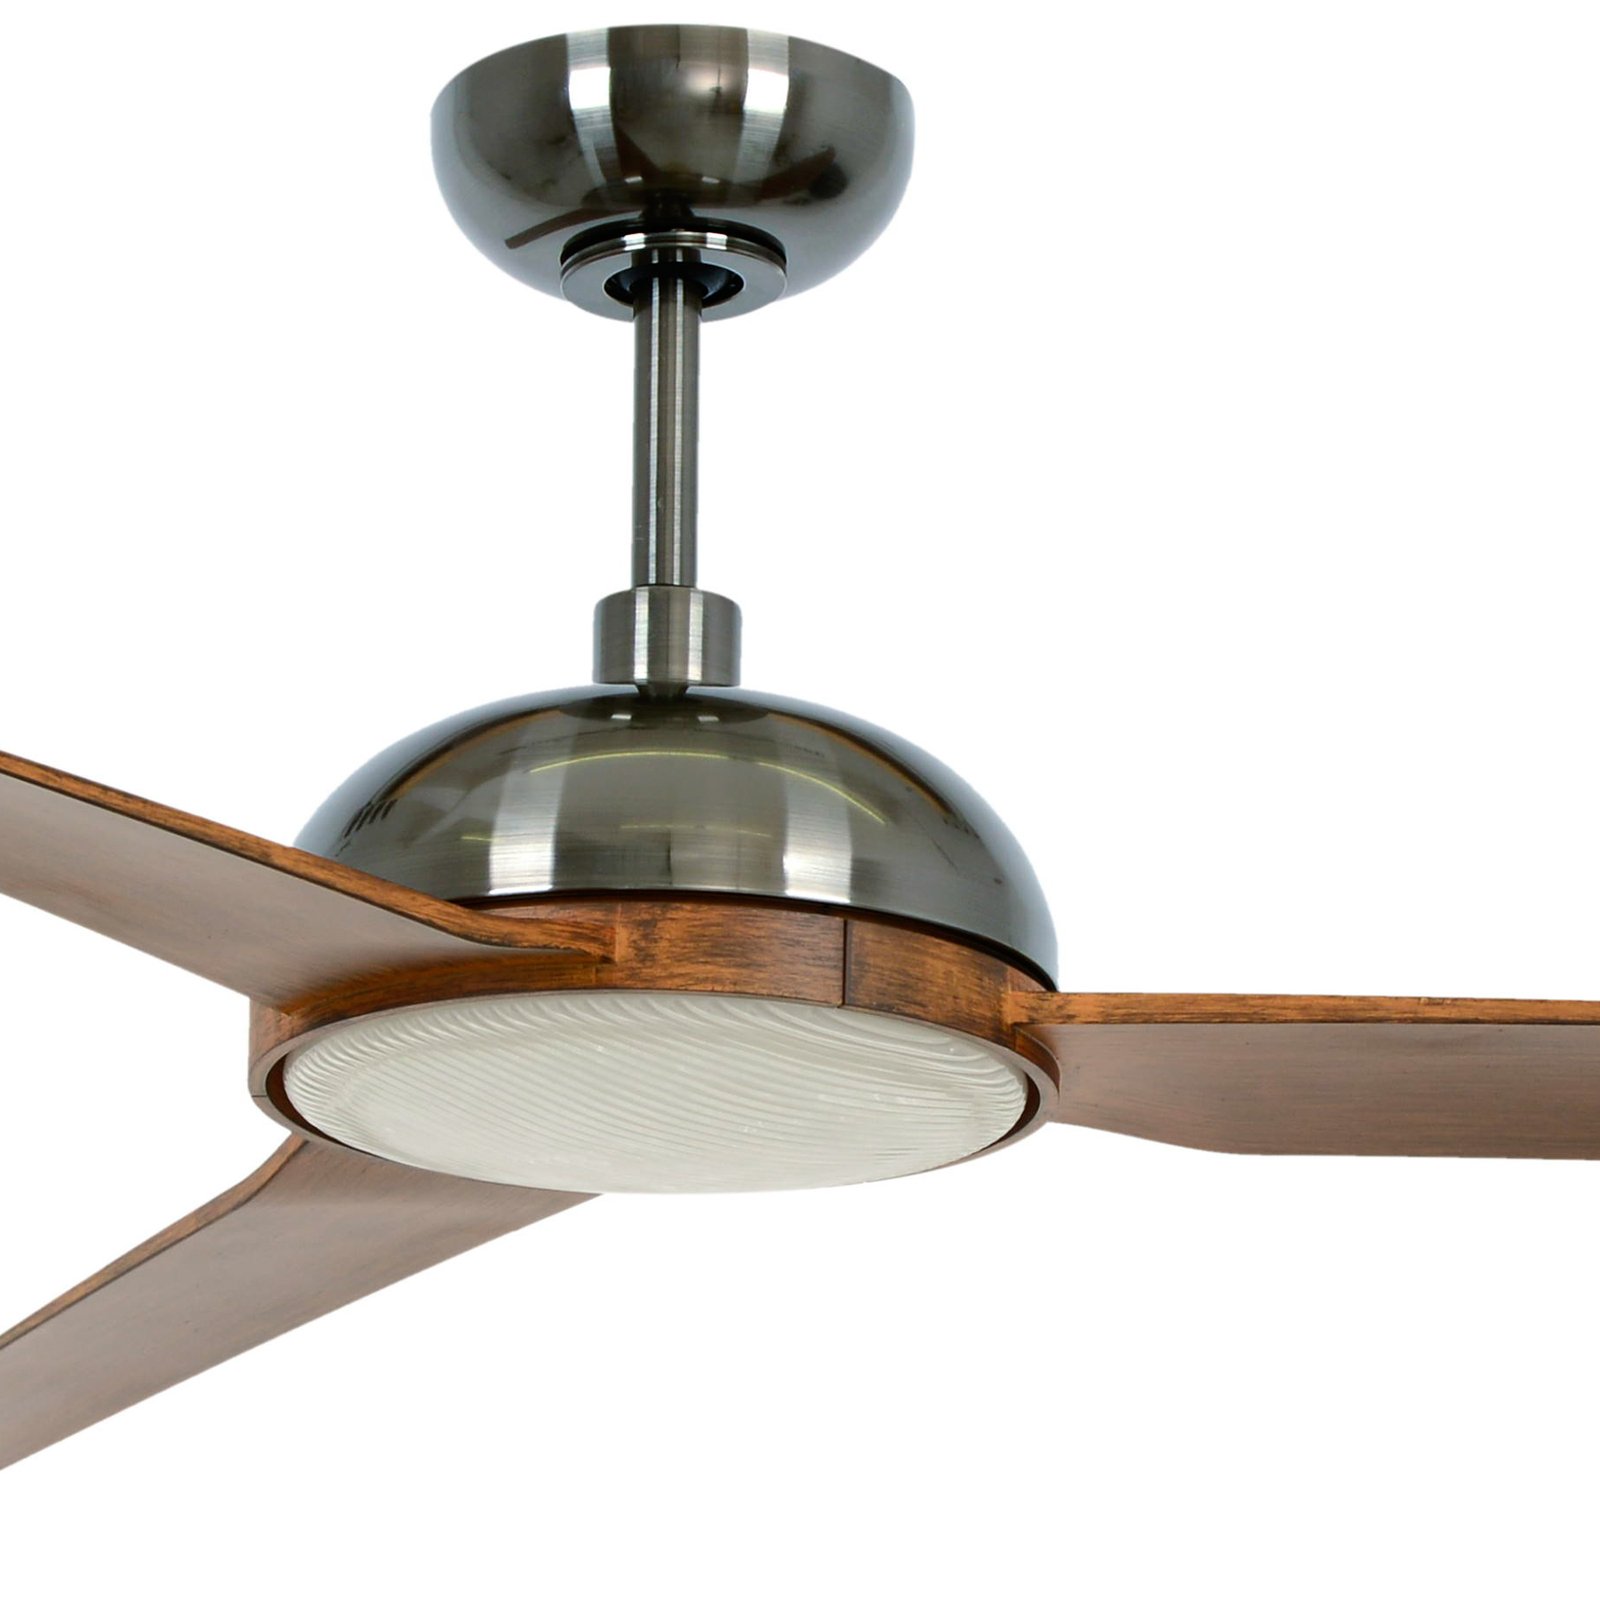 Beacon ceiling fan with light Unione, nickel/koa, quiet